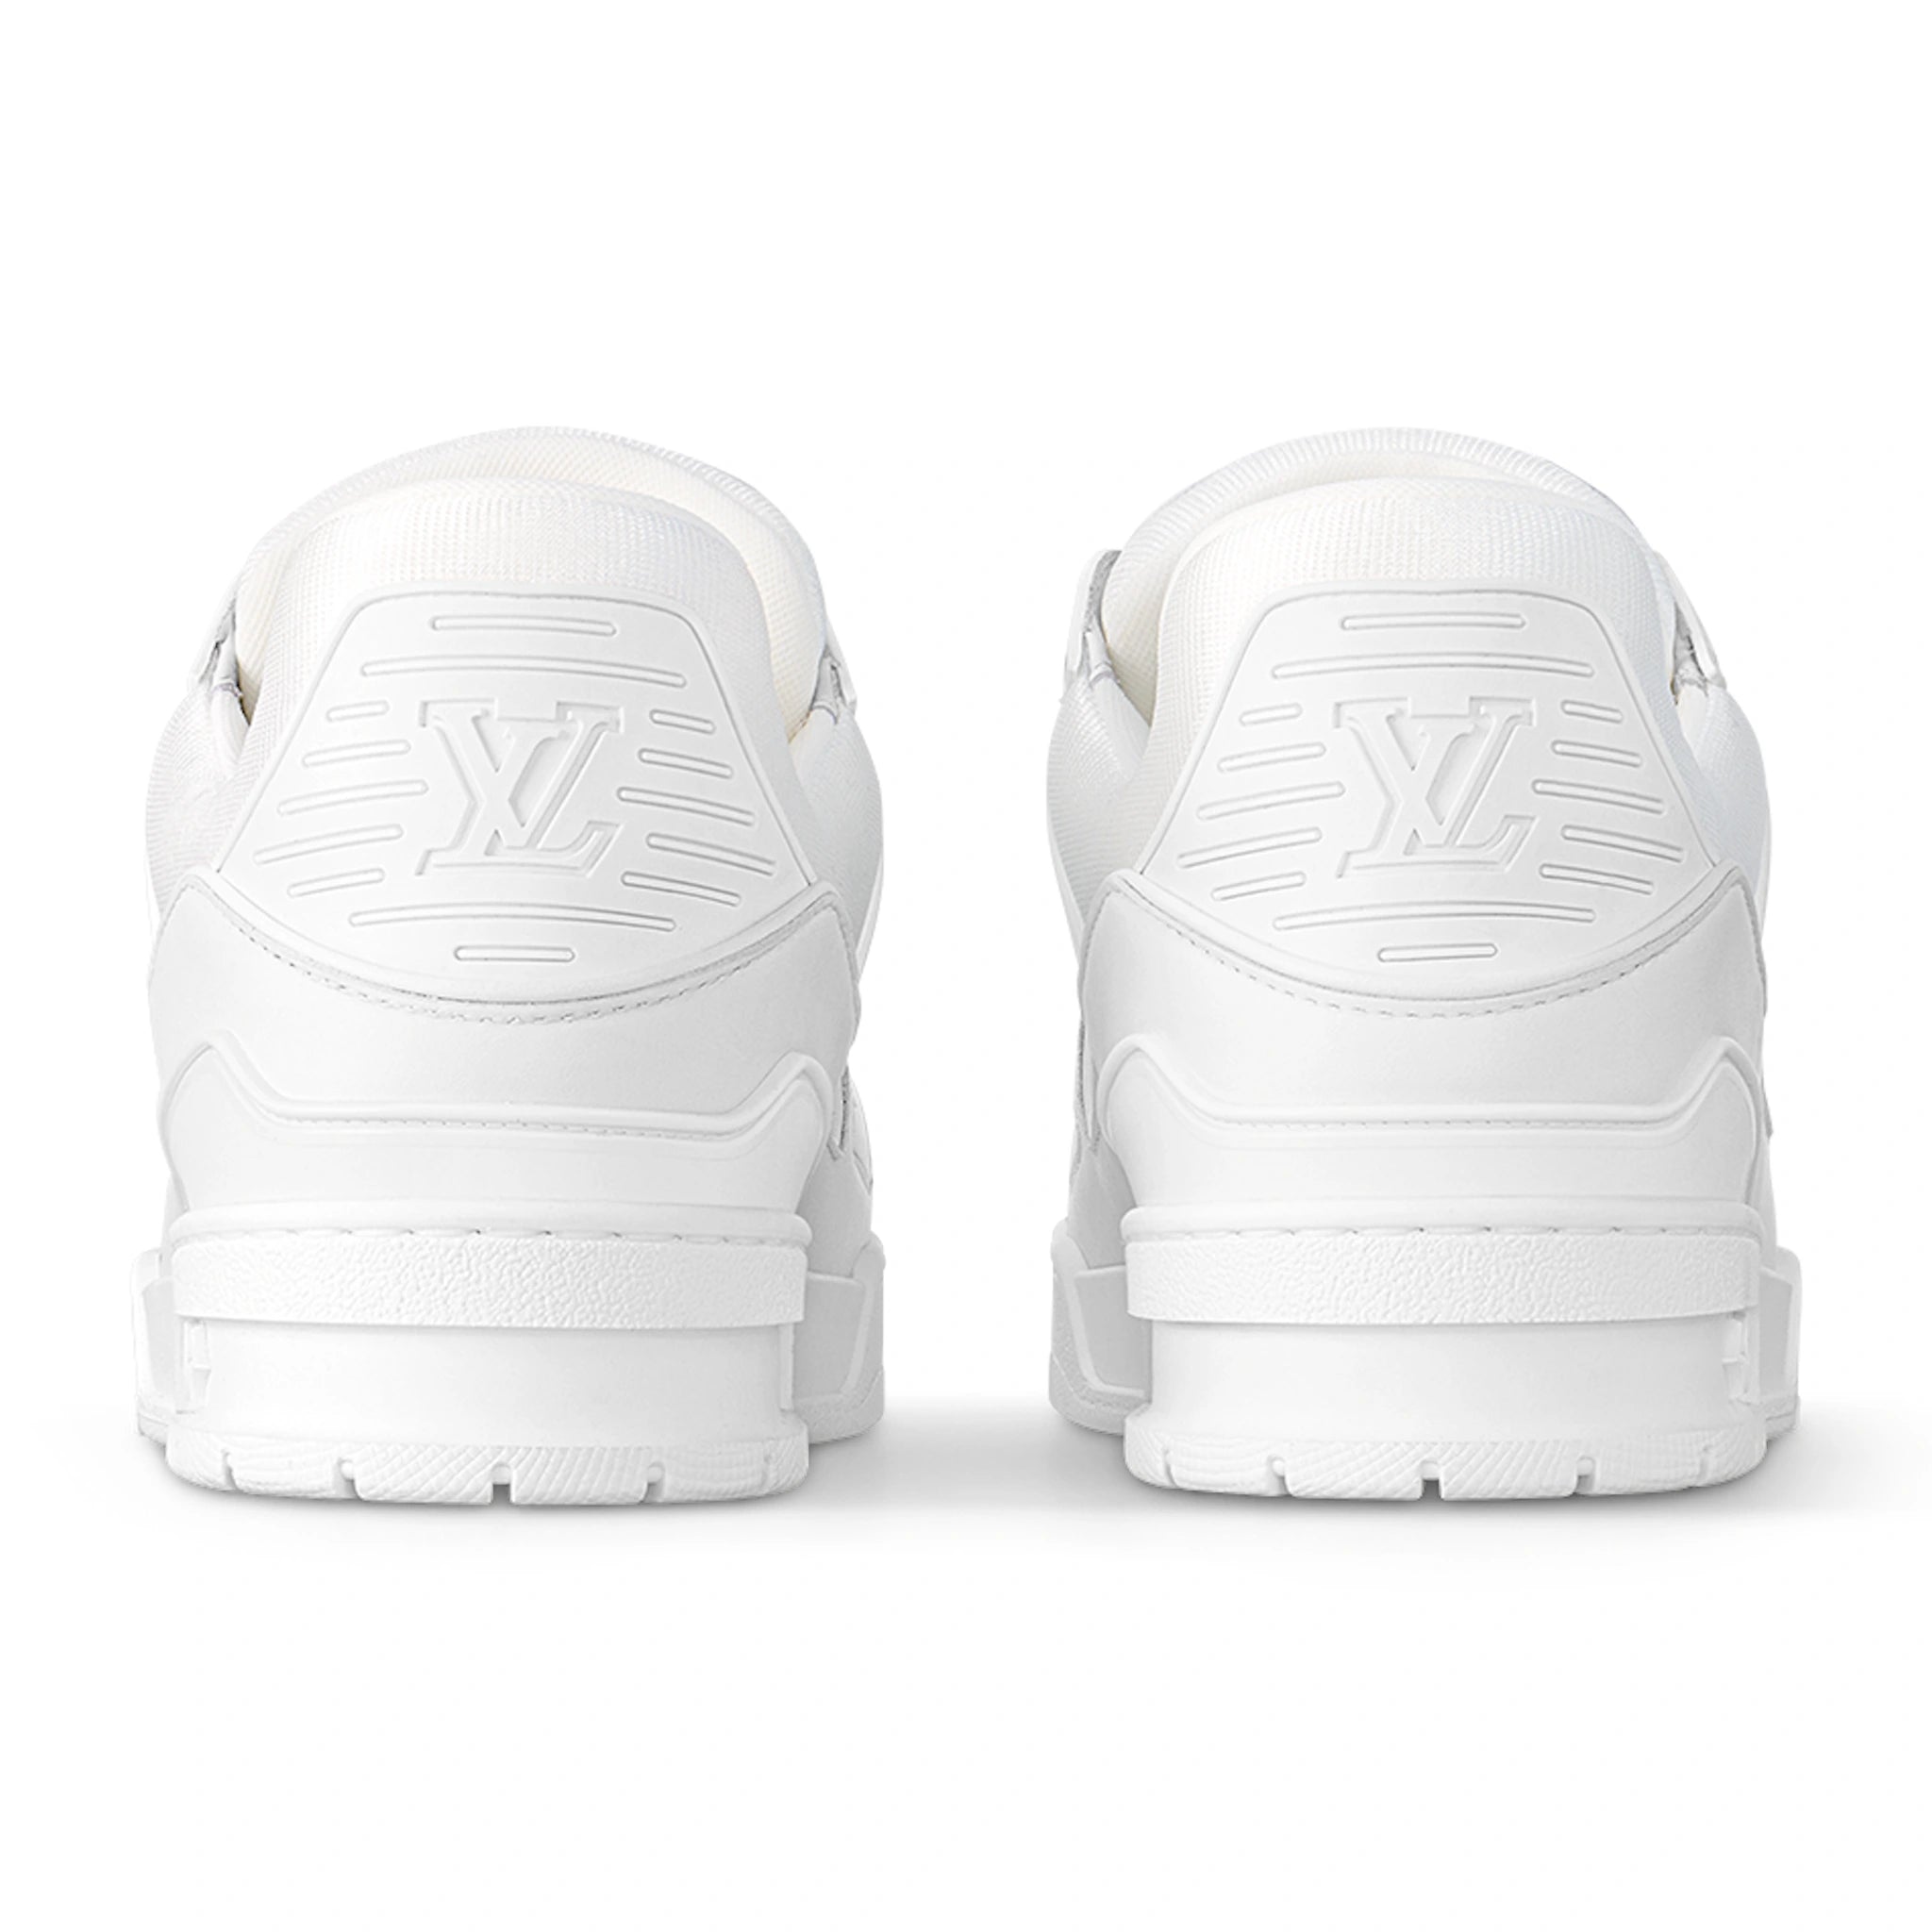 Back view of Louis Vuitton LV White Sneaker 1A9G59